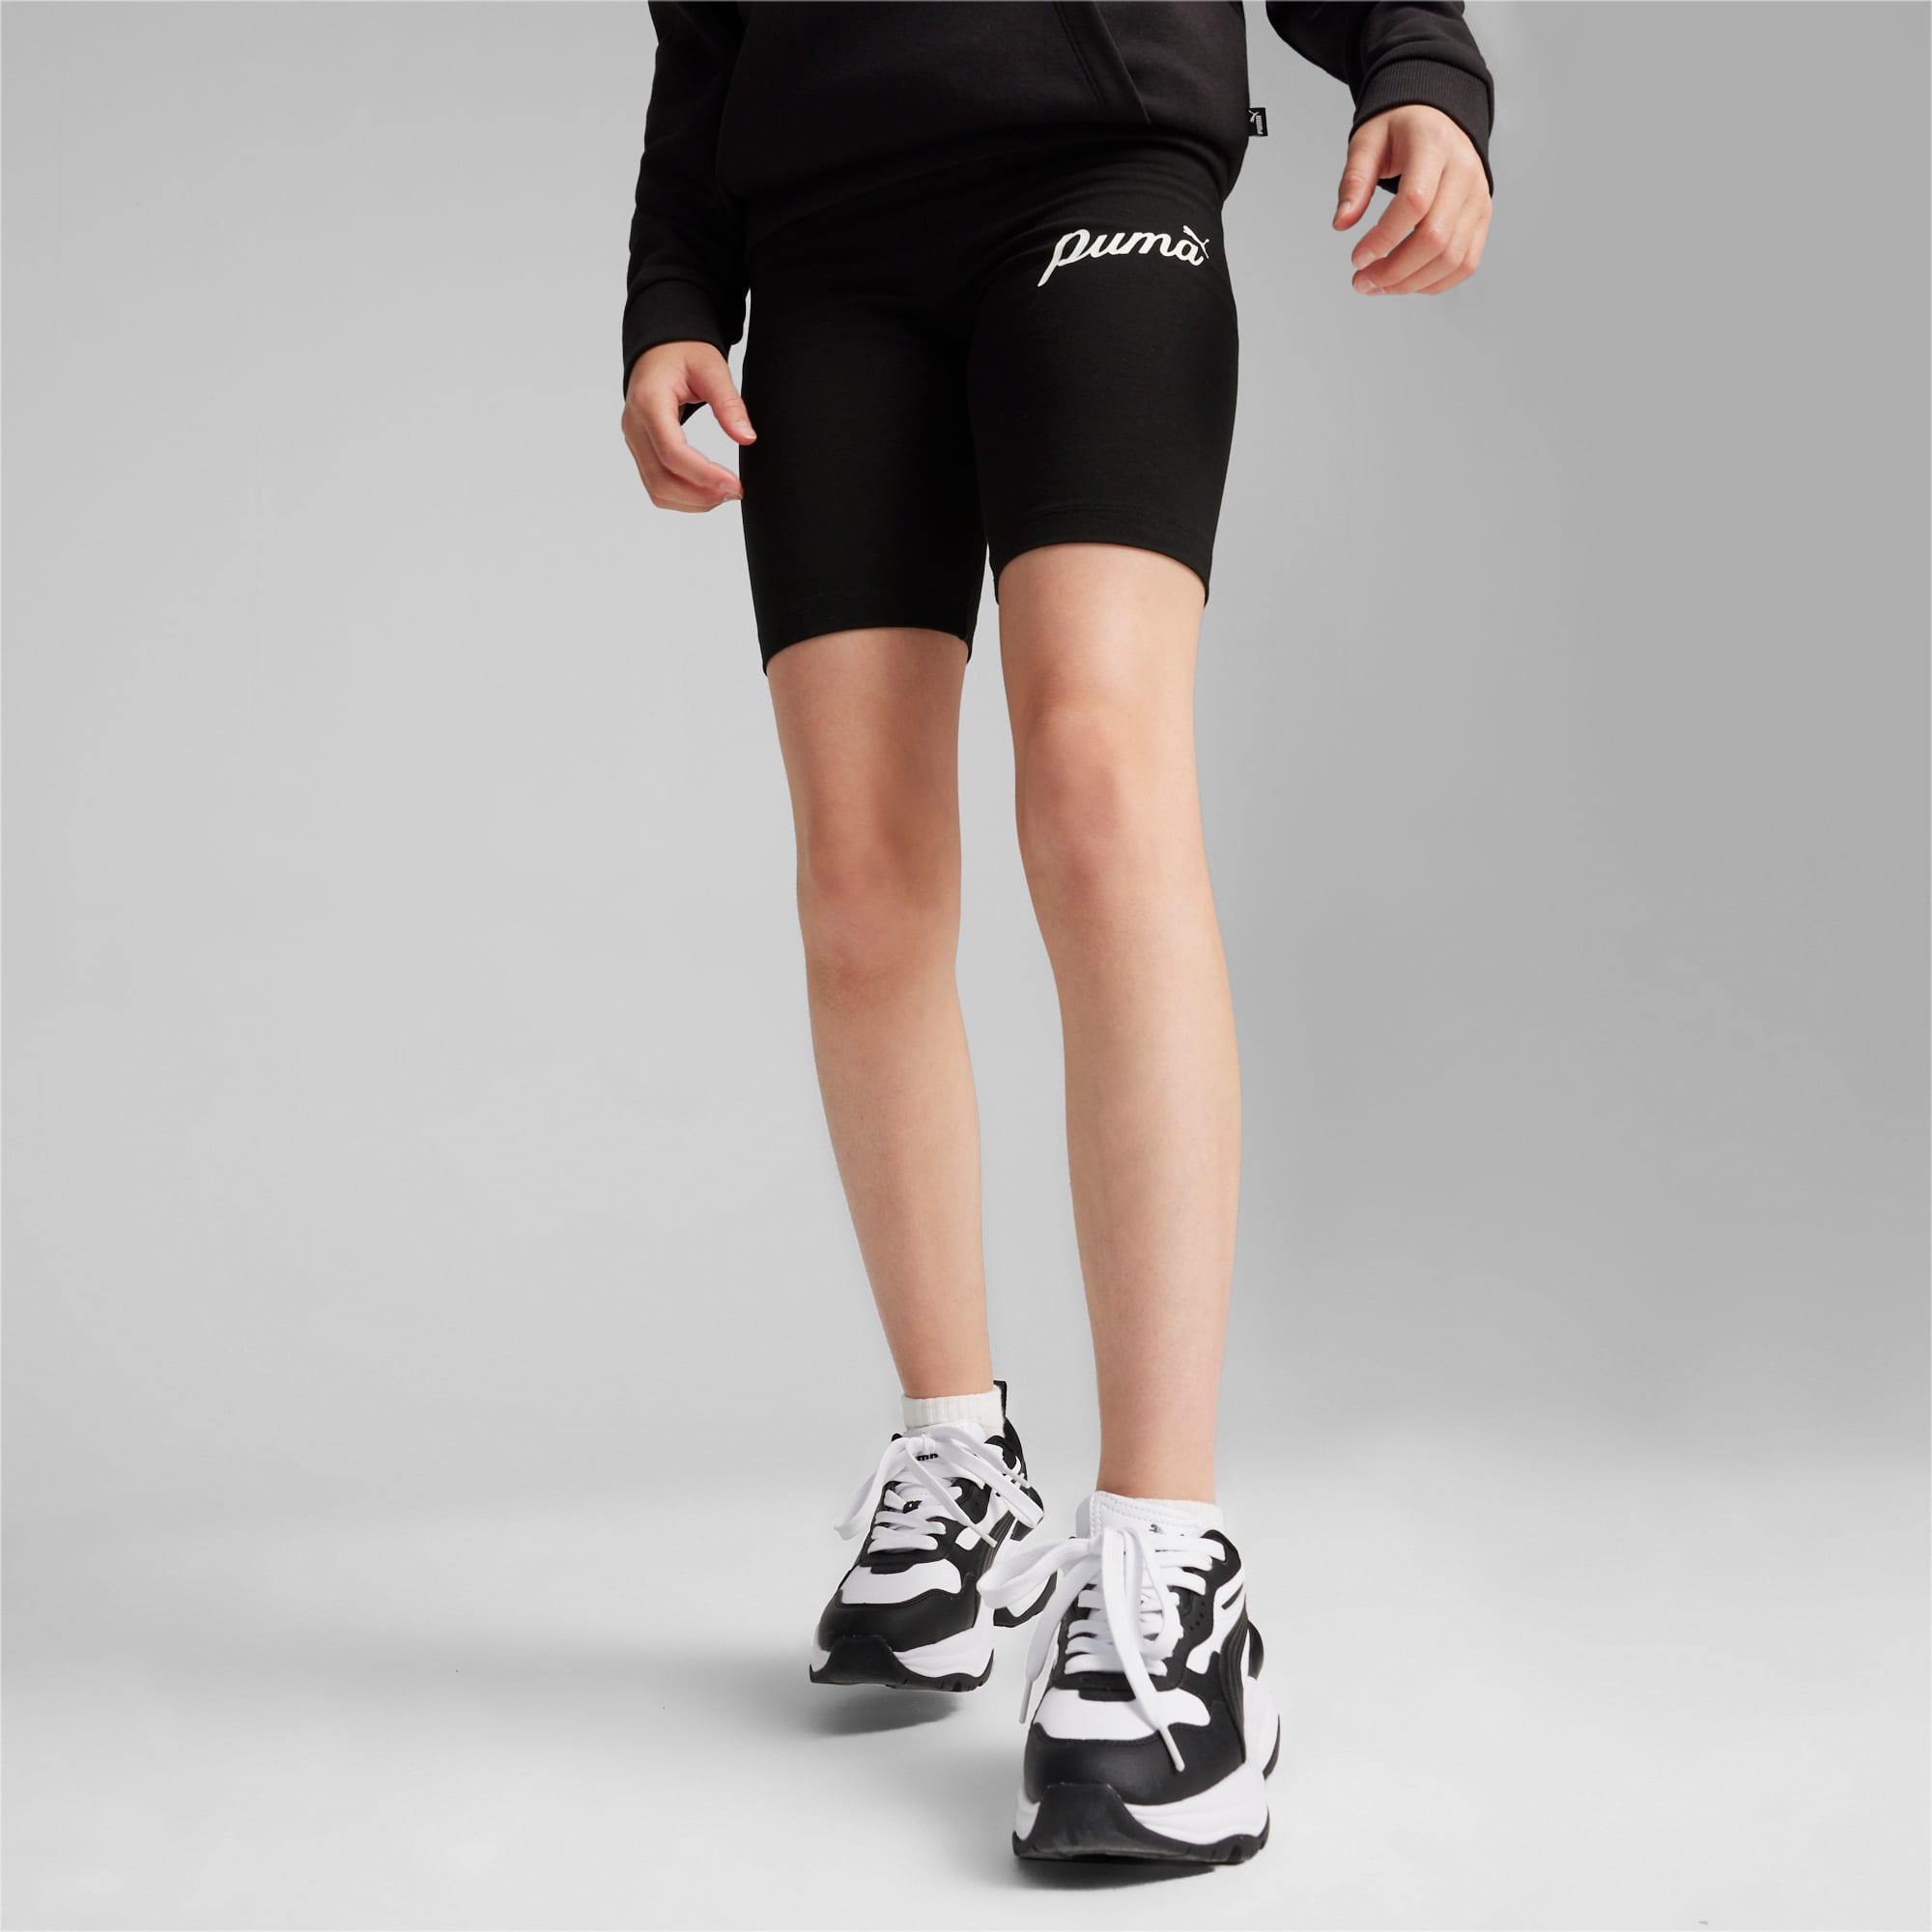 Girls Nike Pro Shorts, Comfortable & Stylish